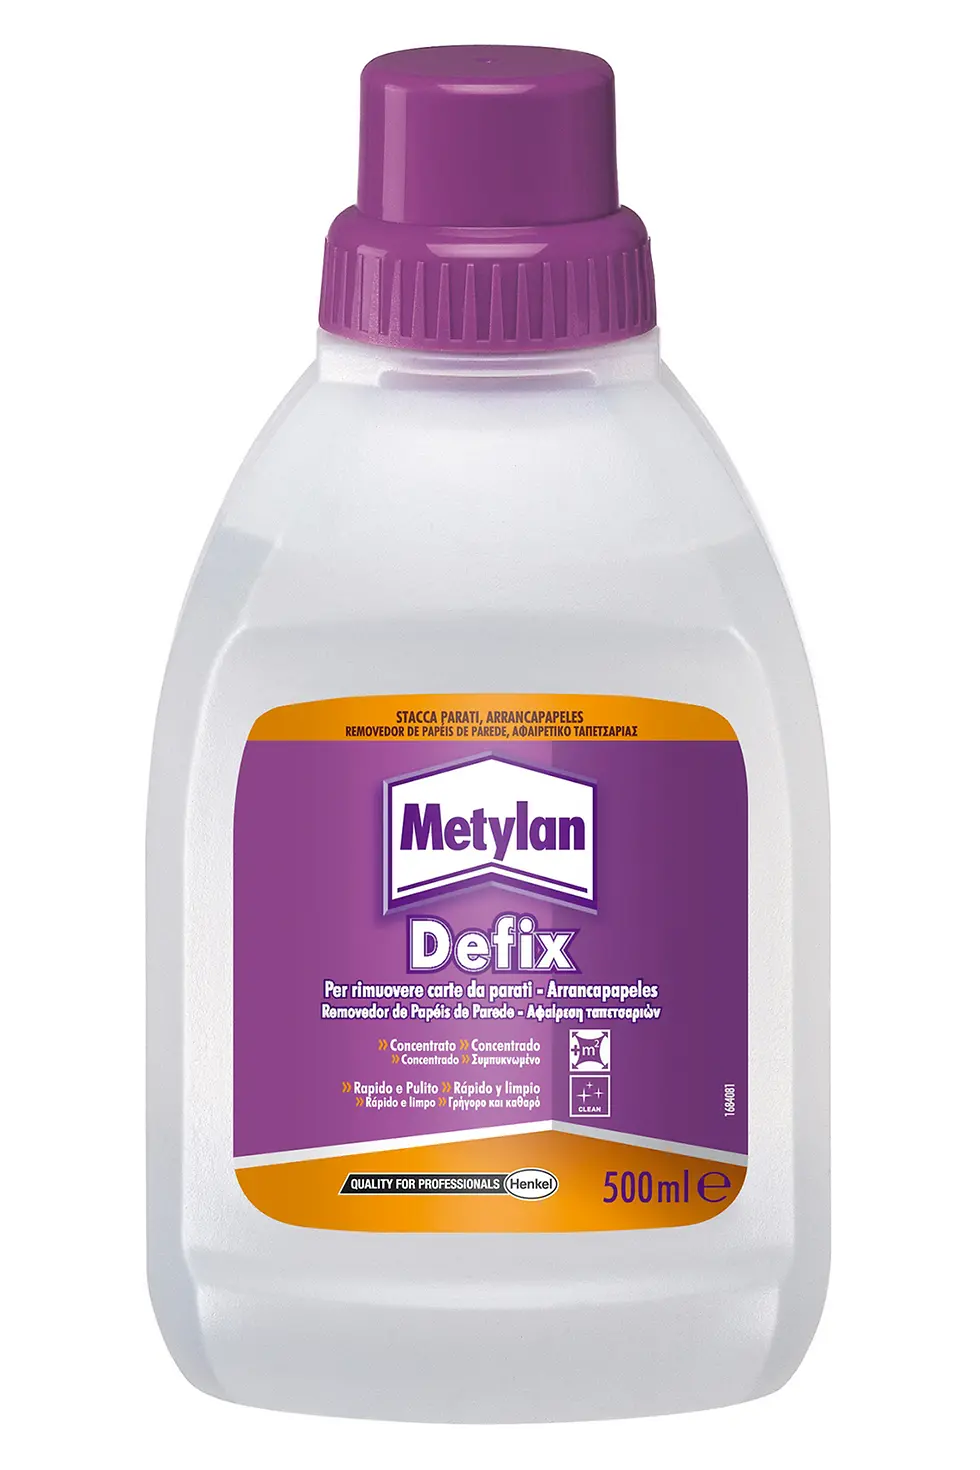 Metylan – Defix